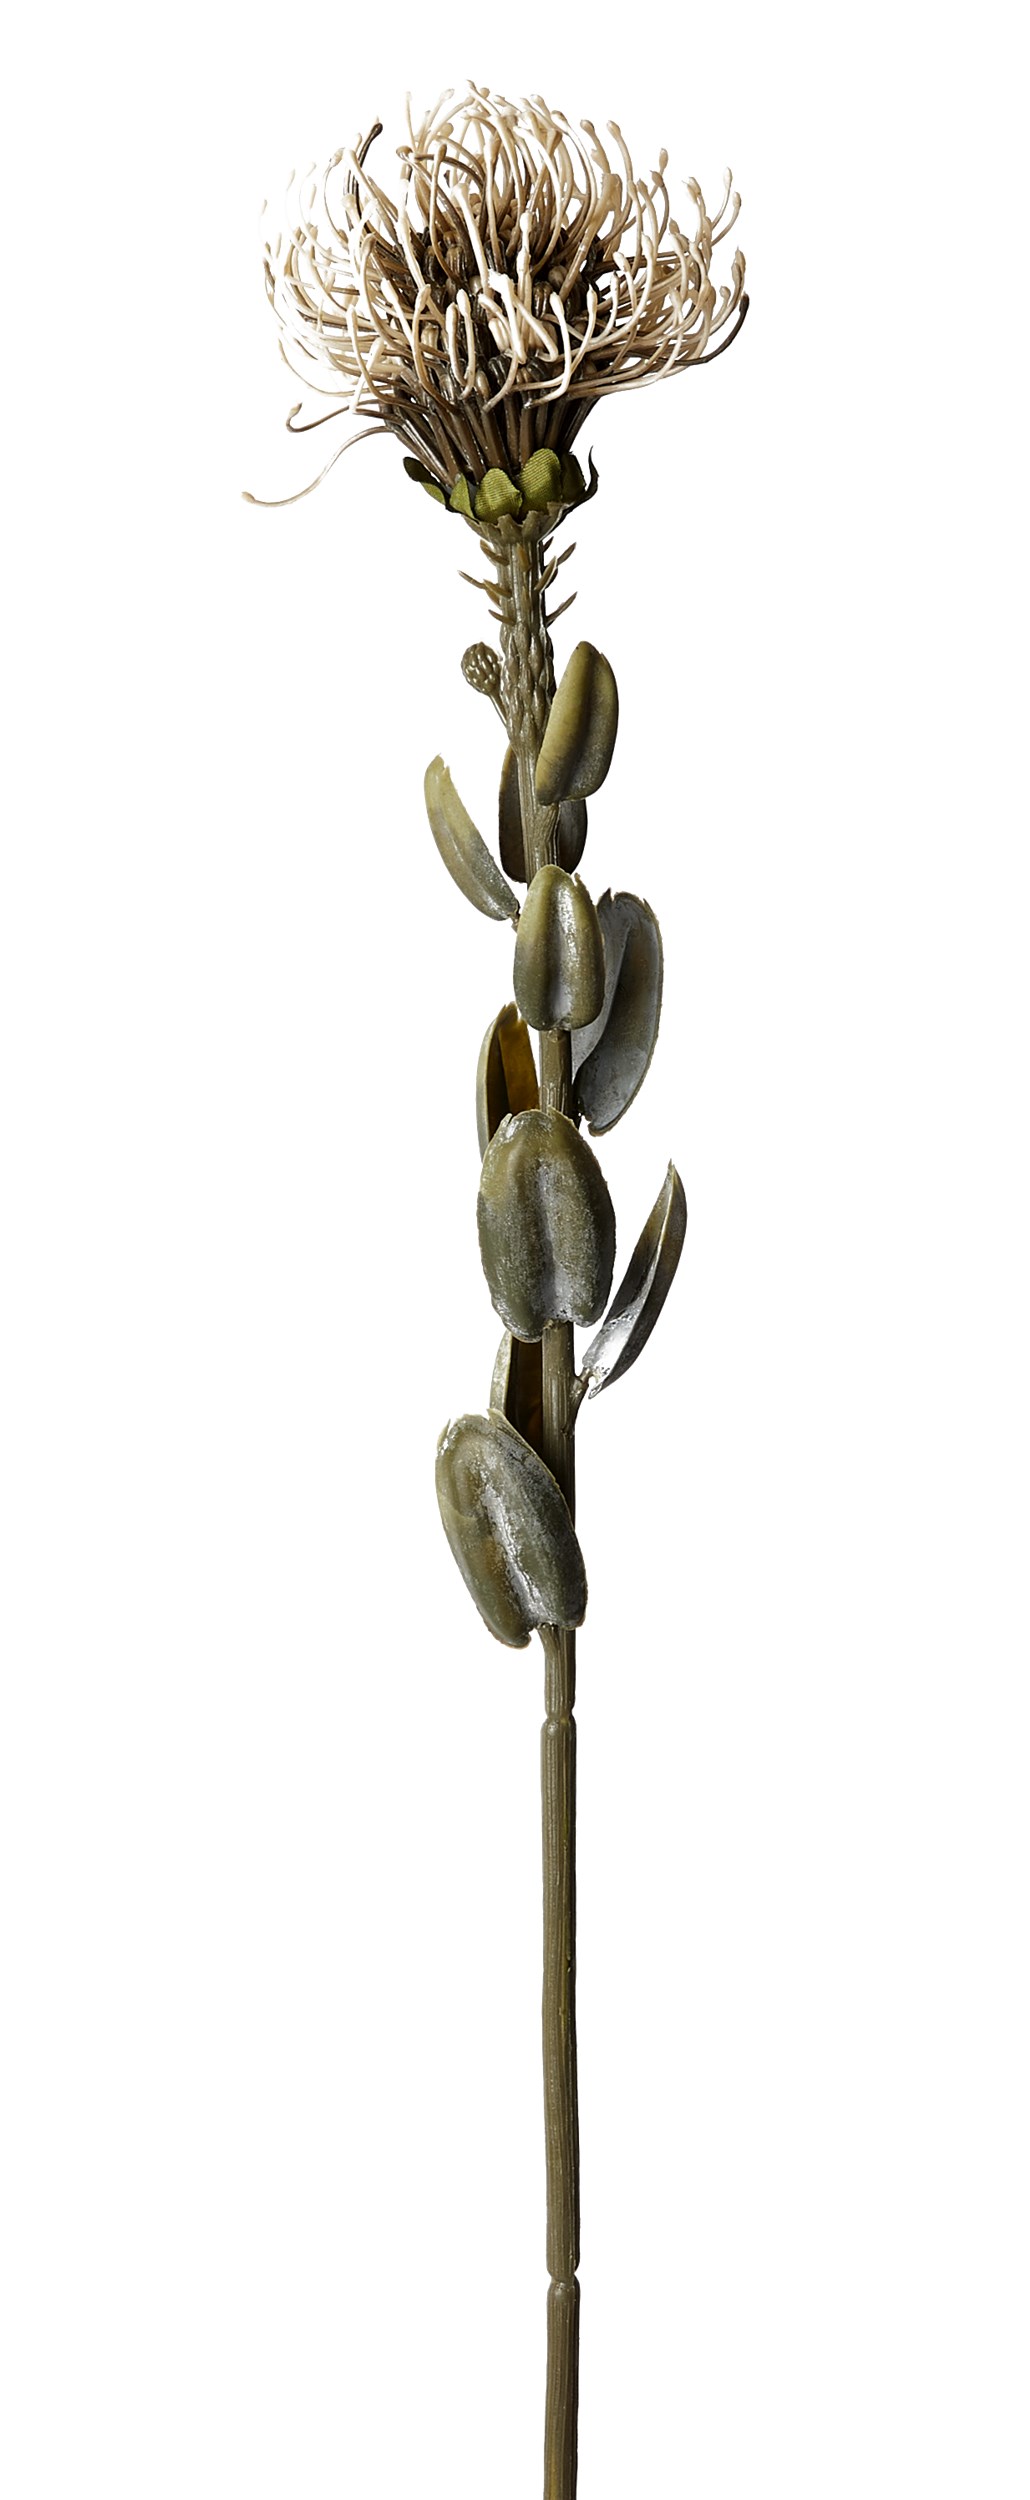 Nutans konstgjord växt 60 cm - Beige blomma och grön stjälk